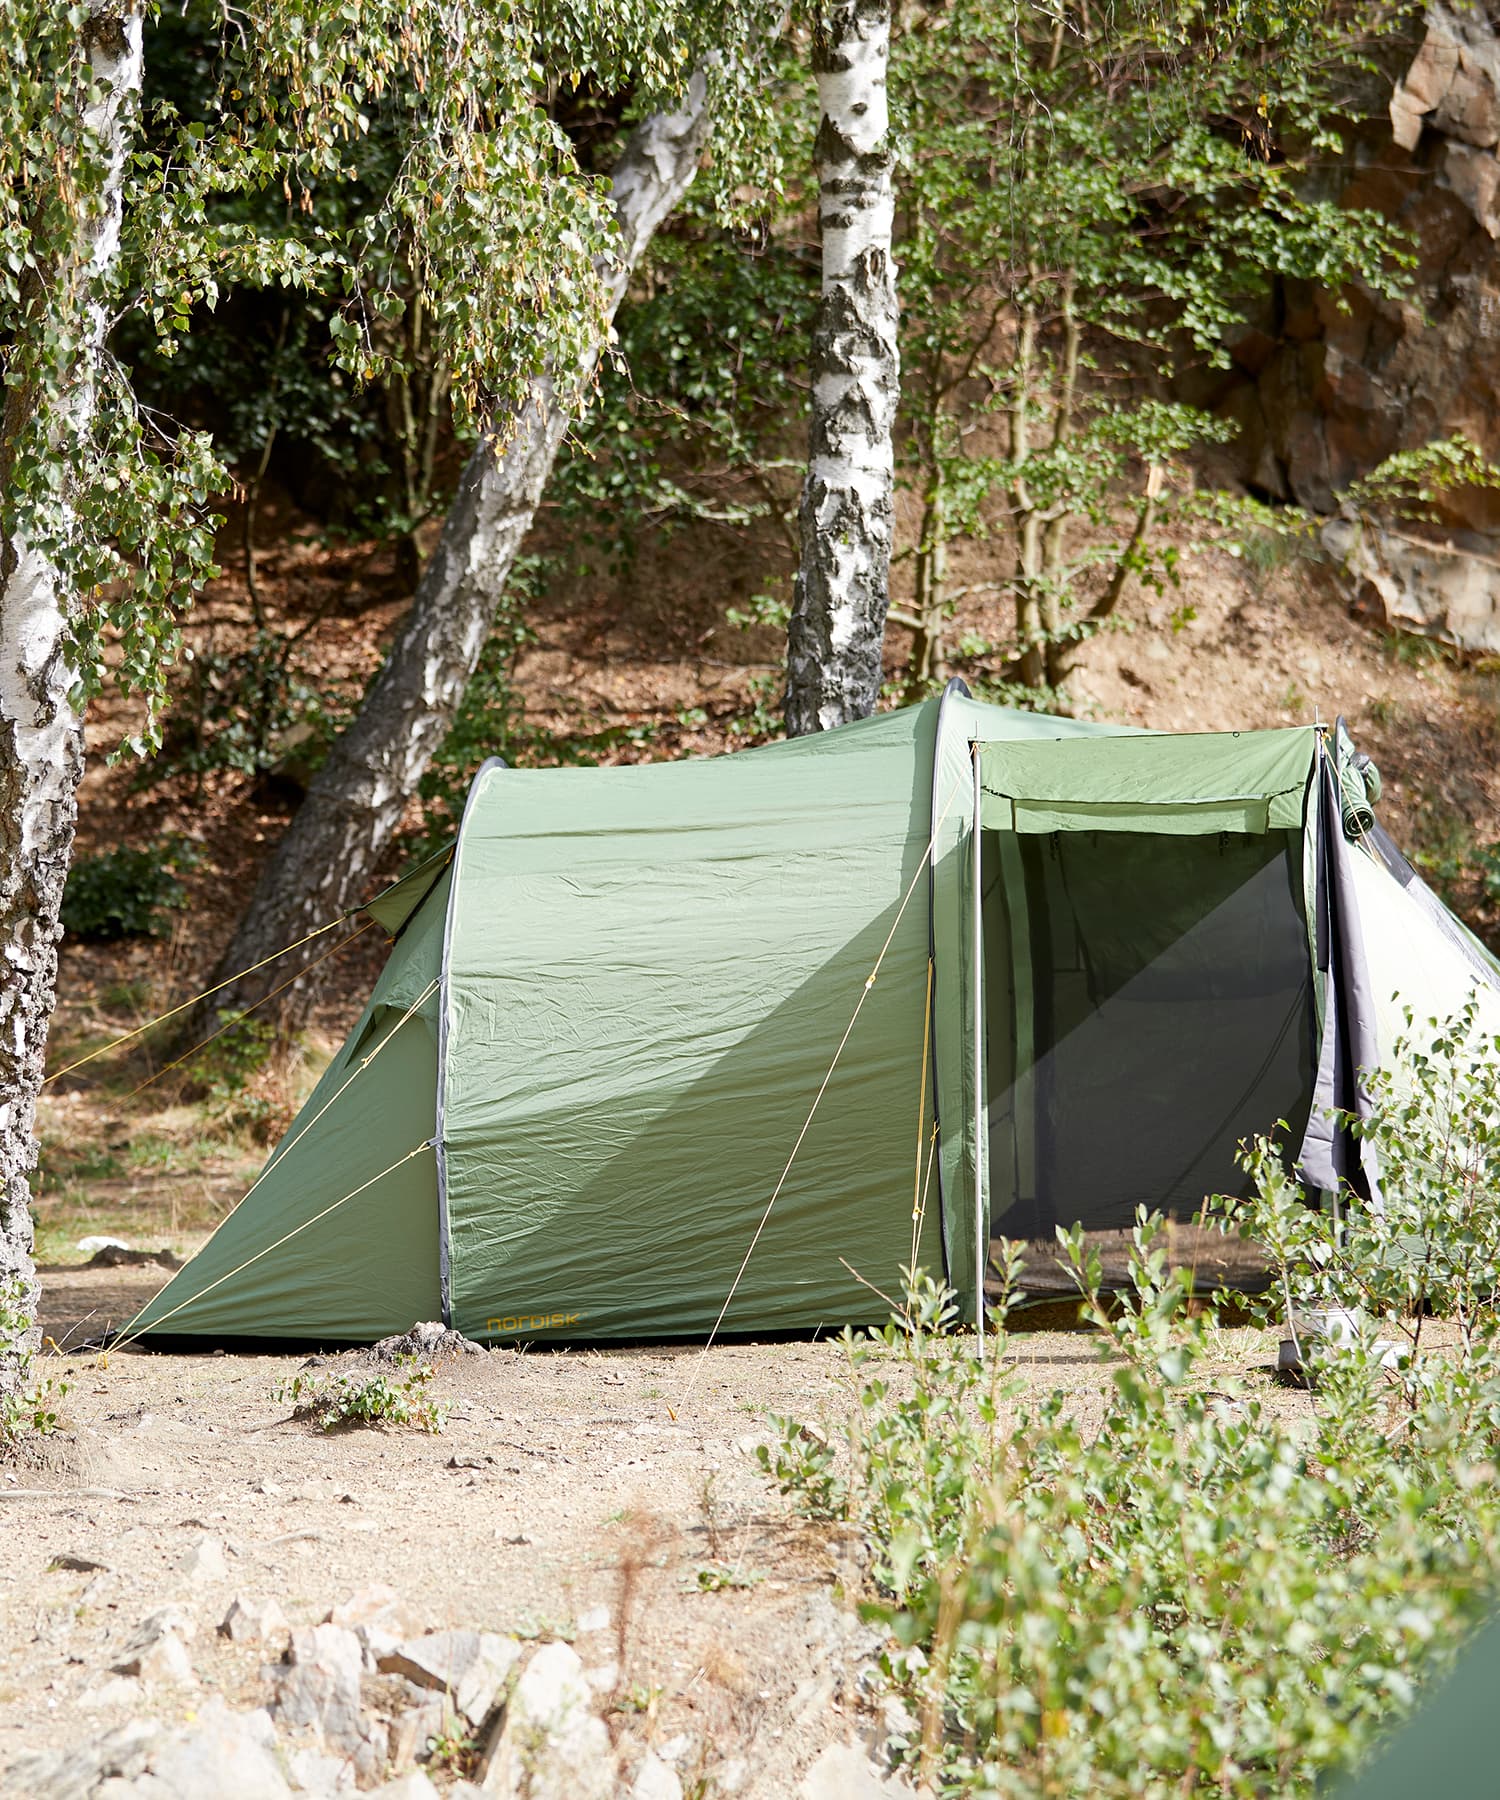 Lucidaノルディスク NORDISK レイサ4 122056 PU キャンプ テント 4人用 2ルームテント ドームテント Reisa